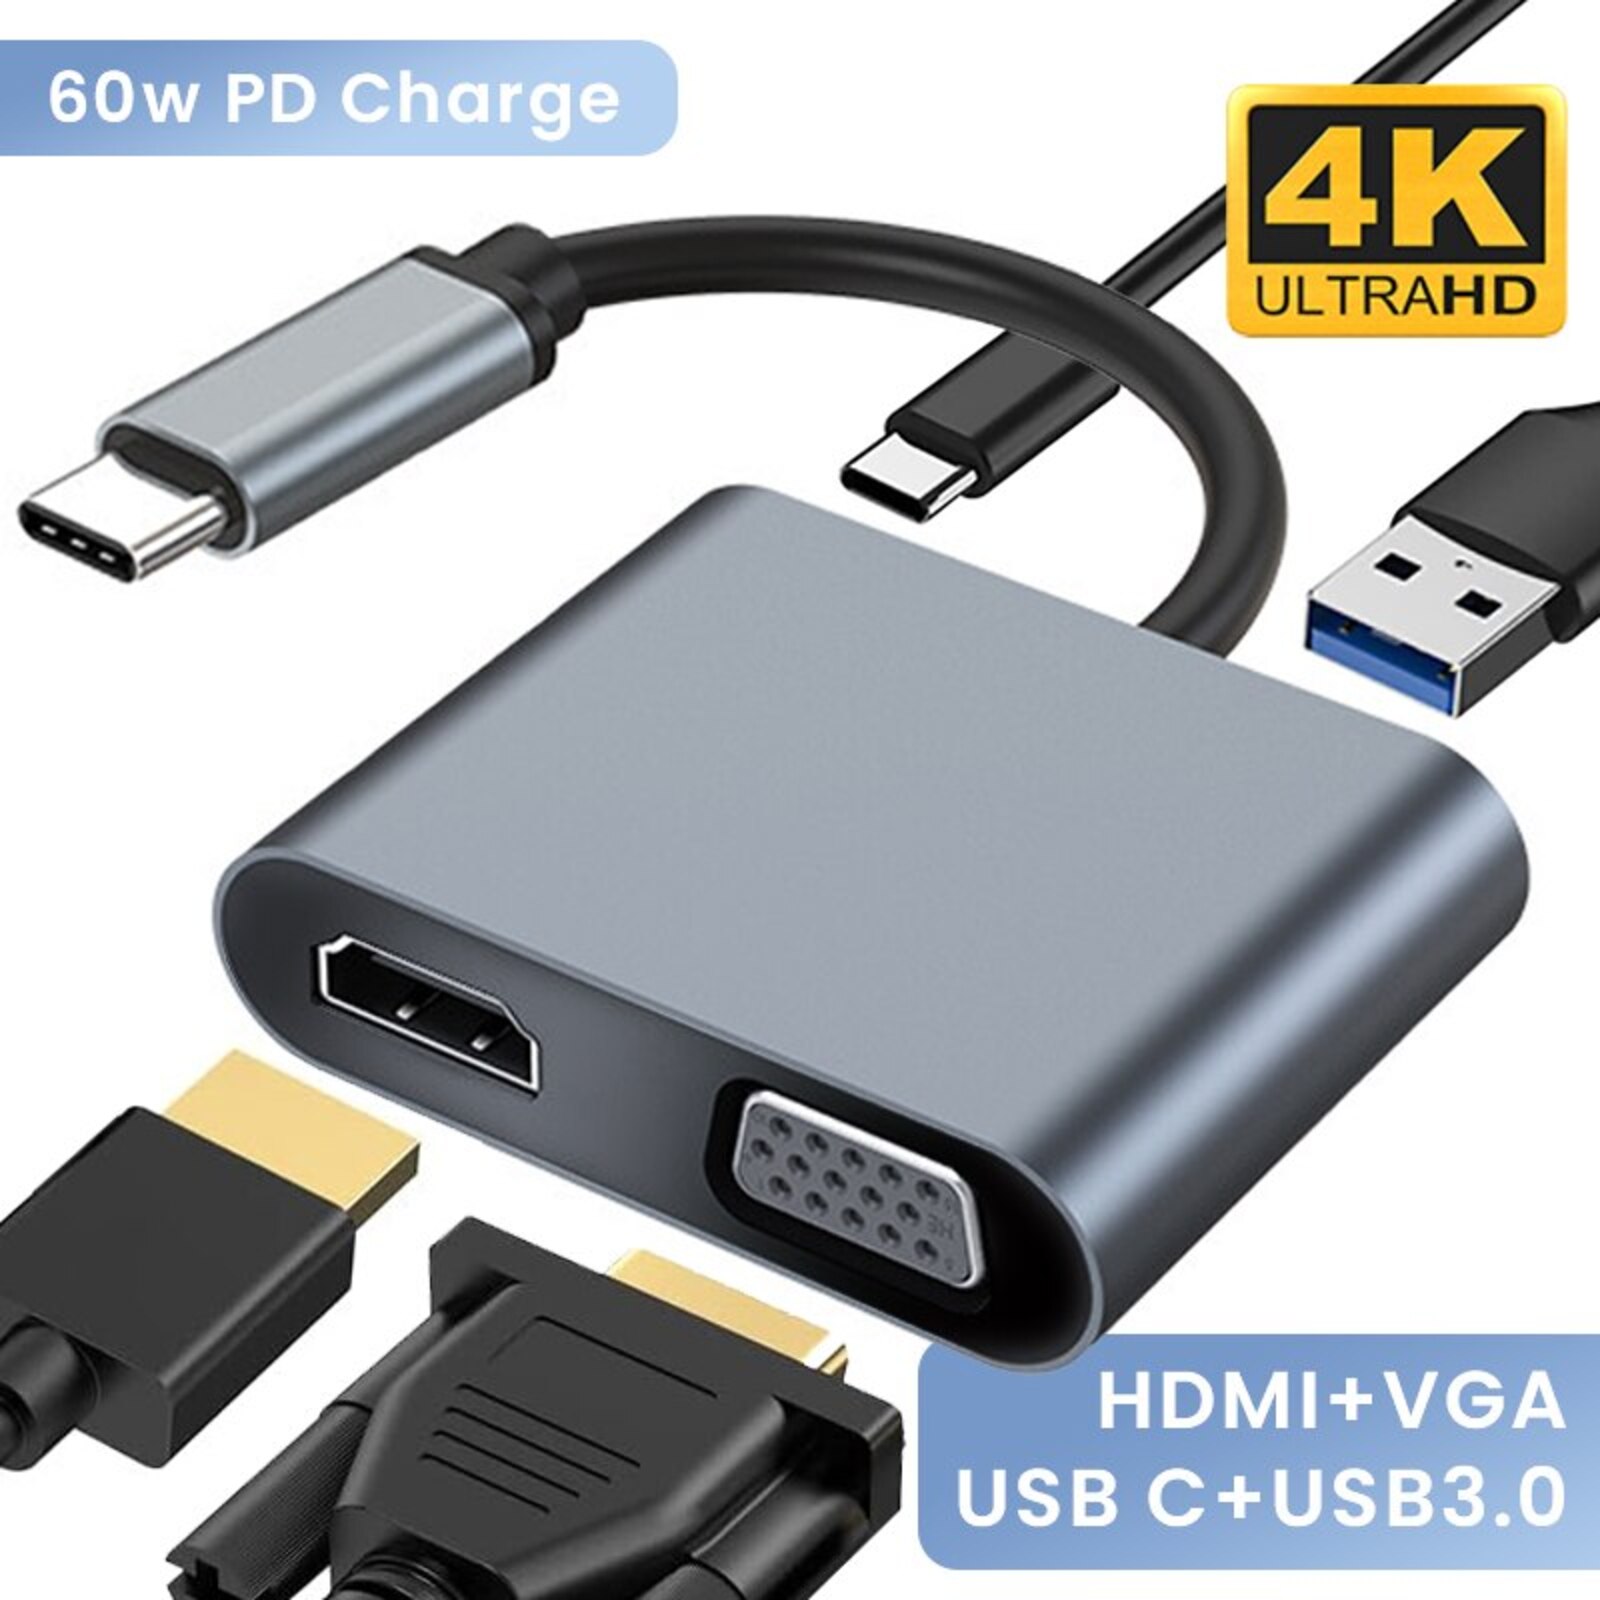 Adaptateur USB C to VGA 4K HDMI USB 3.0 PD - Type c maroc